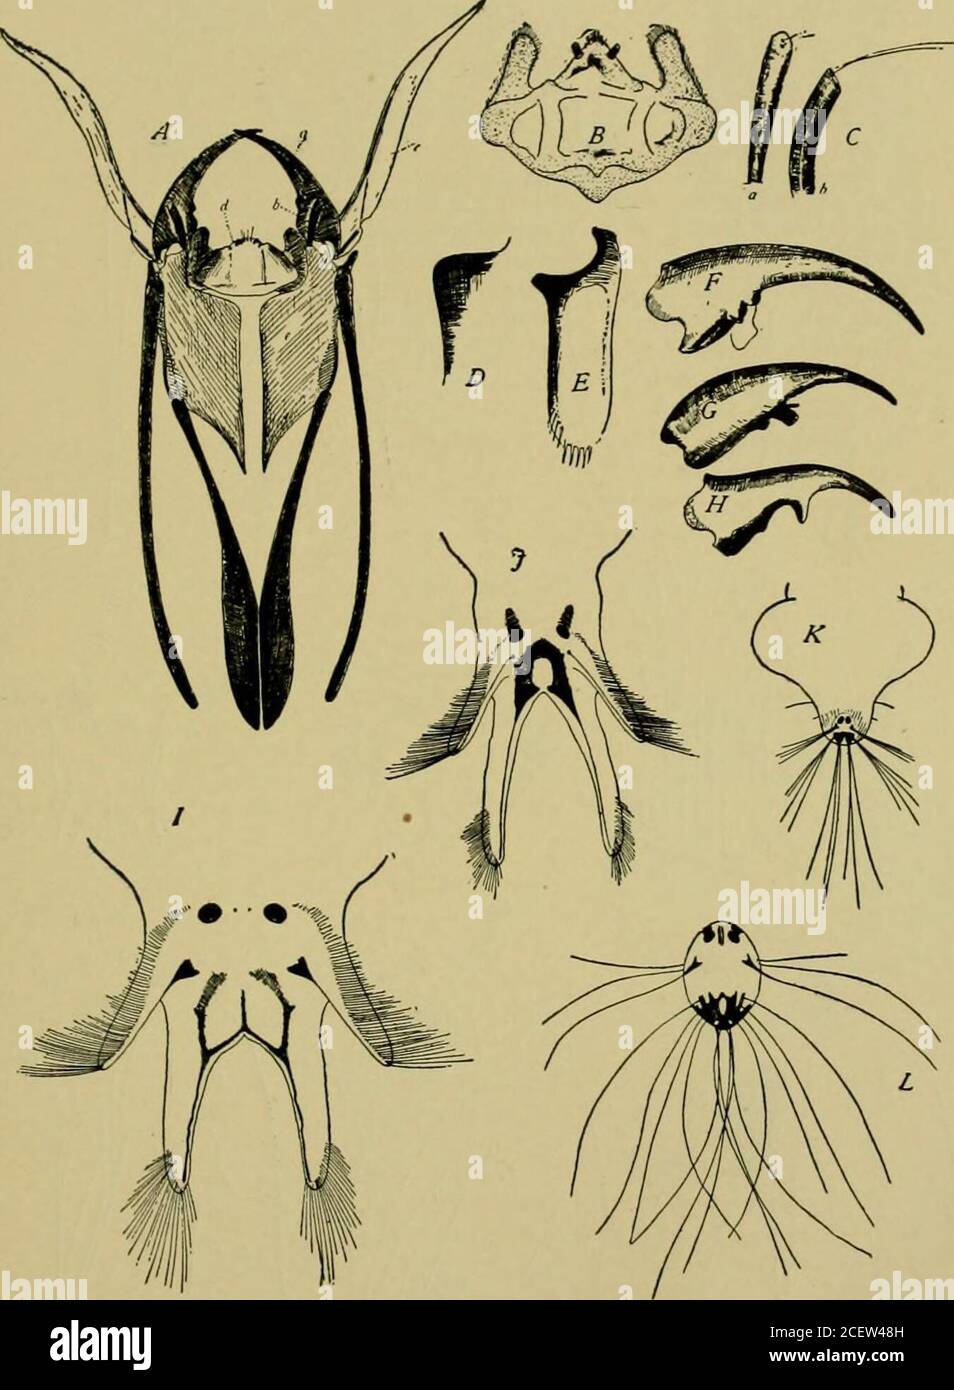 . Journal of Entomology and Zoology. , zweites Bauchsegment, mit Spirale. B. dorsaler Aspekt der ^ pupa von E. longicornis. A, Kopfschild; b, vergrößerte Basis der Antennen; c, pronotale Atemmehner; d, mesonotales pra?scutum; e, meso-notales scutum; f, mesonotales postnotum. C. Ventrale Seite des Abdomenendes von ^ pupa von E, spinosa. A, neunter Sternit; b, neunter Tergit. D. dorsale Aspekt der gleichen, a, neunten tergite; b, neunten sternite. E. Seitenaspekt von 9 Puppen von E. spinosa. A, Pronotalatmhorn; b, Kopfschild; c, Wirbelsäule auf Antennalbild; d, Tuberkel auf Tentorium; e, Tuberkel auf cly Stockfoto